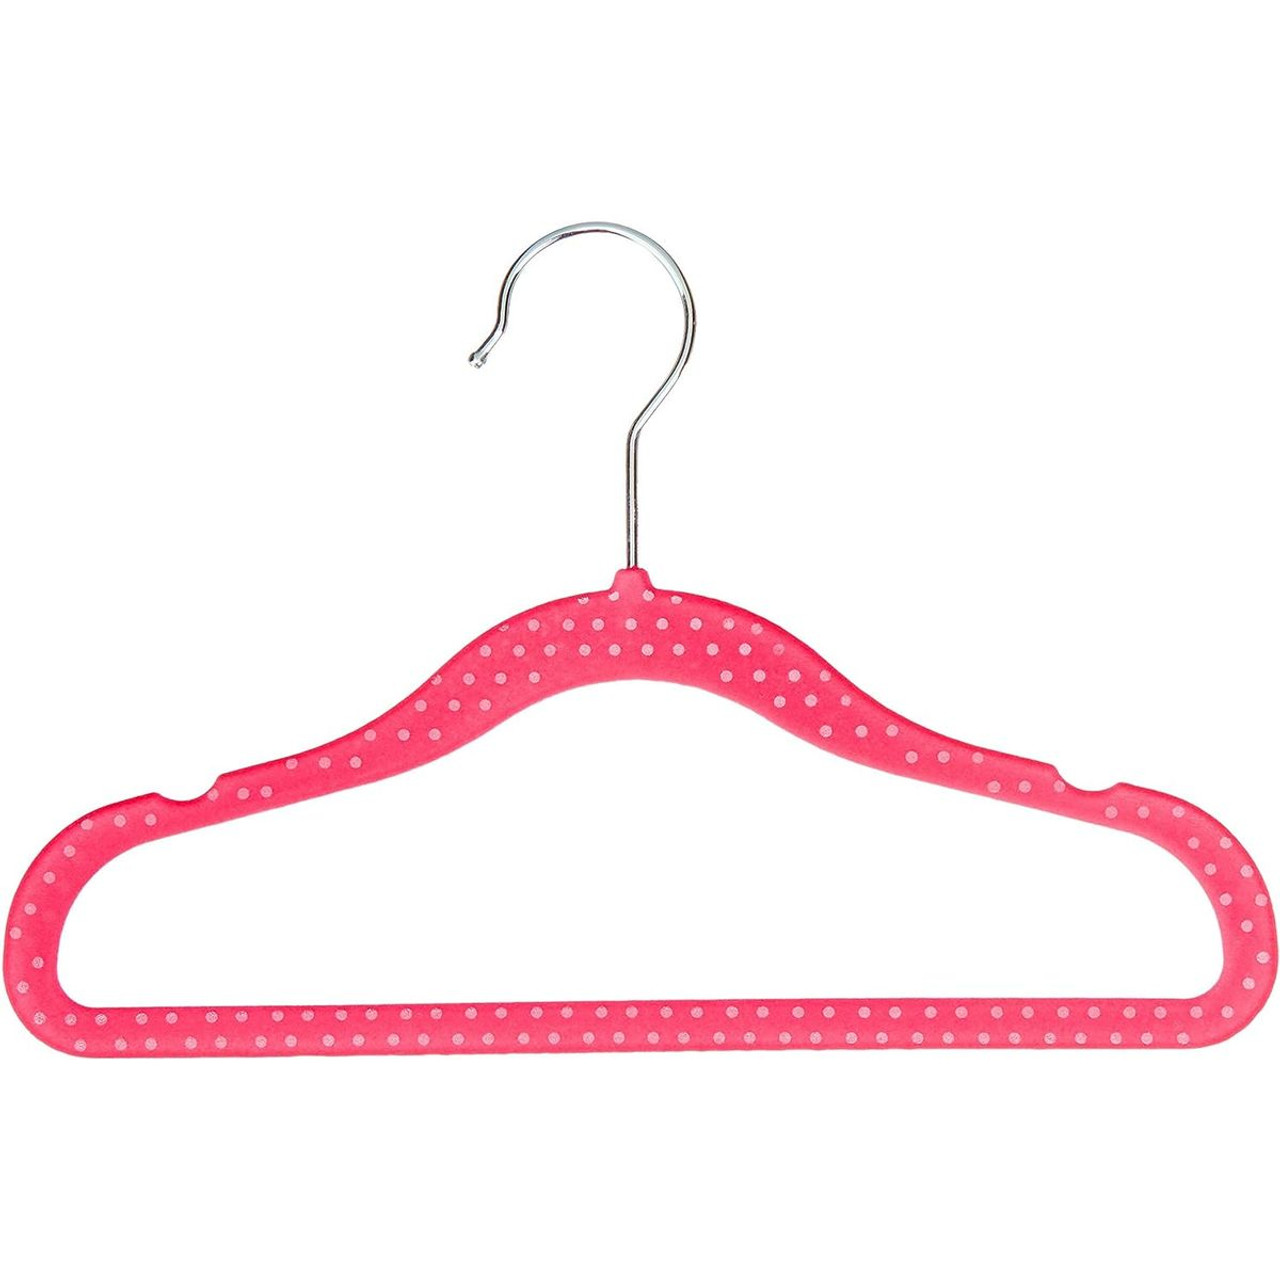 Kids' Polka Dot Velvet Hangers by Amazon Basics (1- or 5-Pack) product image